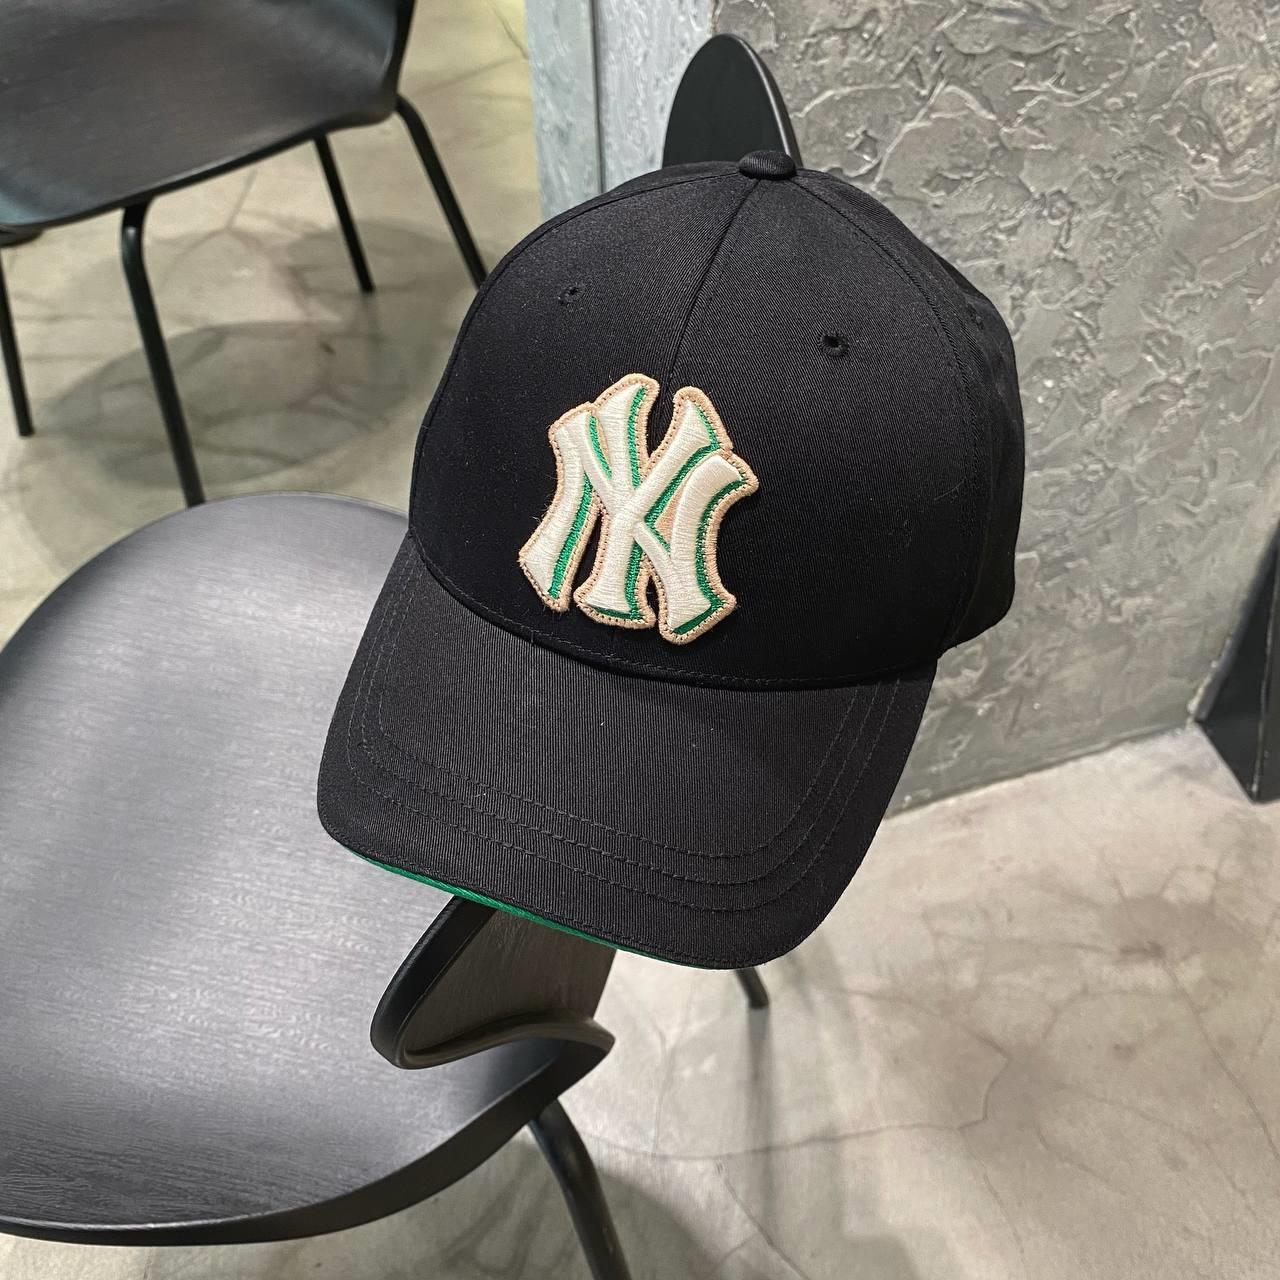 Mua Mũ MLB Mens New York Yankees New Era Black League 9FORTY Adjustable Hat  chính hãng Giá tốt